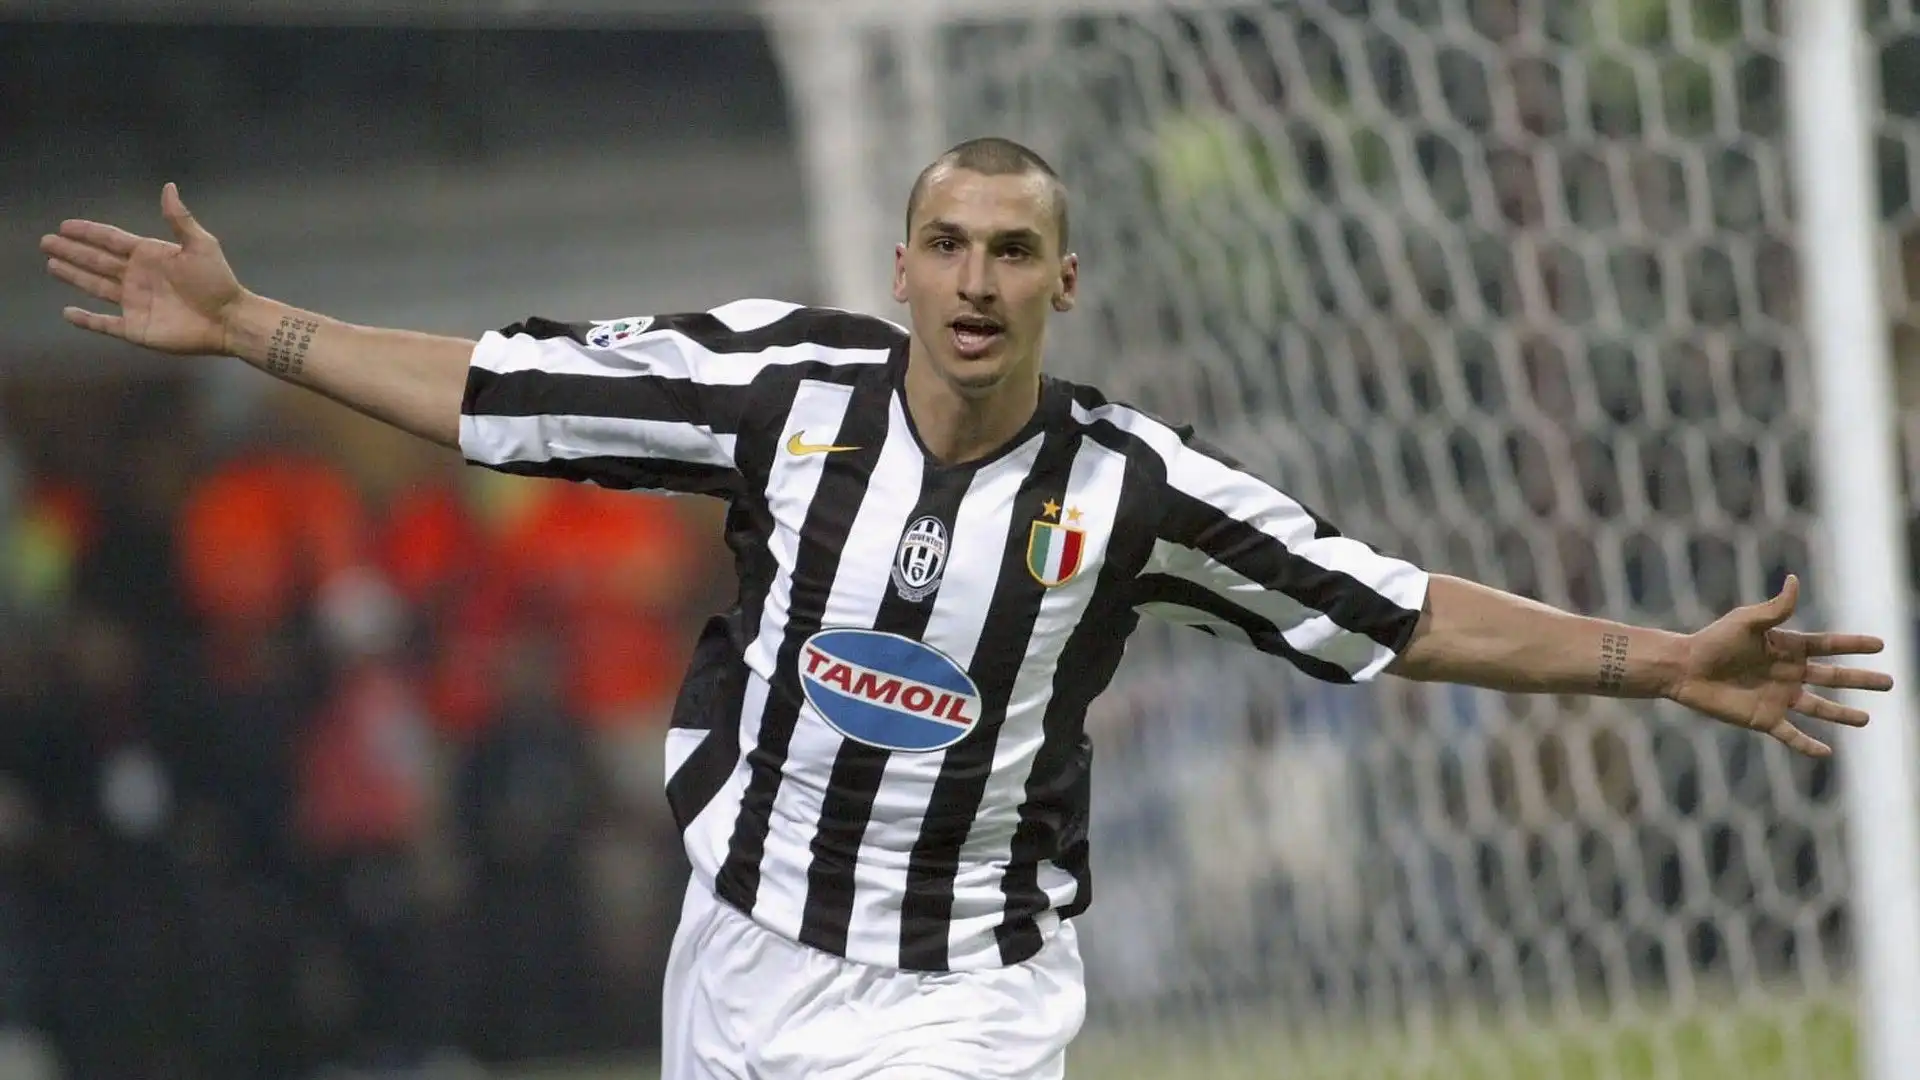 Il 31 agosto 2004 Zlatan Ibrahimovic è passato alla Juventus. Ha giocato con i bianconeri fino al 2006 vincendo diversi trofei